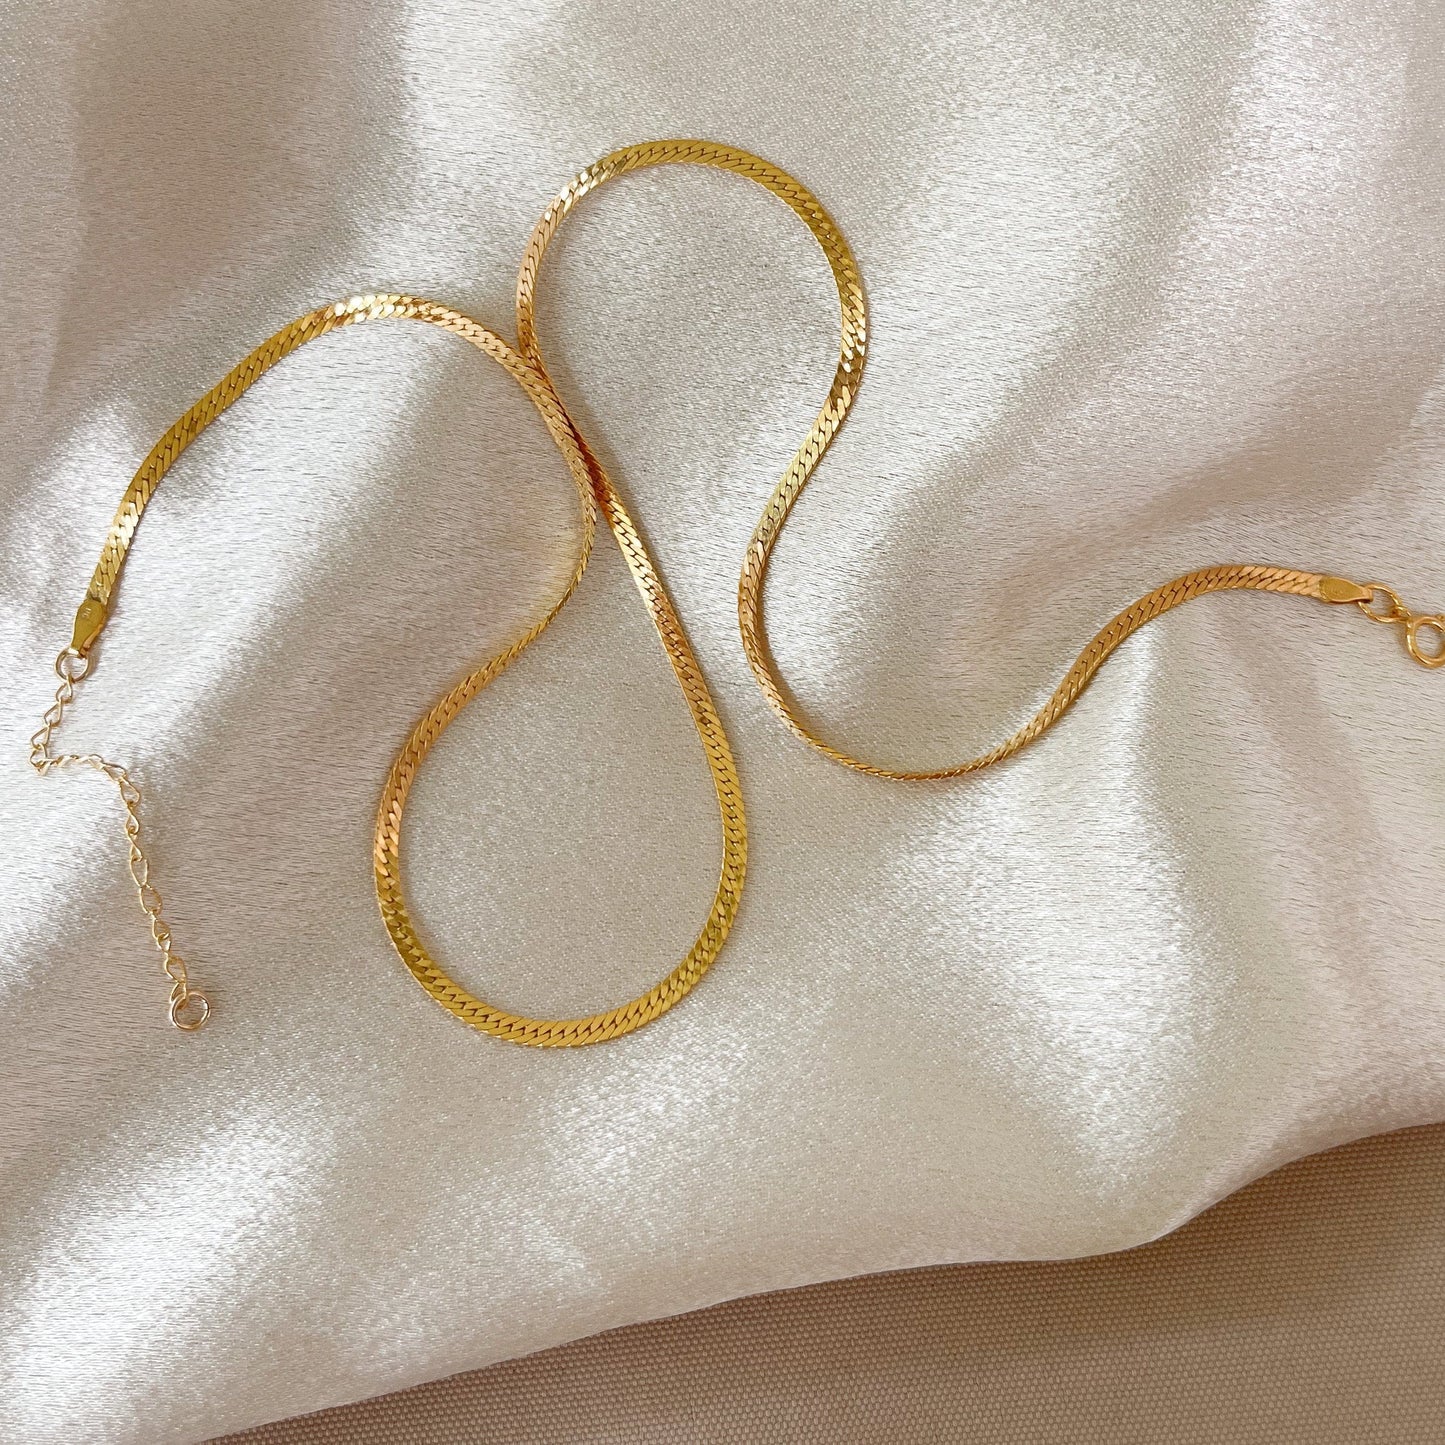 Herringbone Chain 14k Gold Filled (2.5 mm)